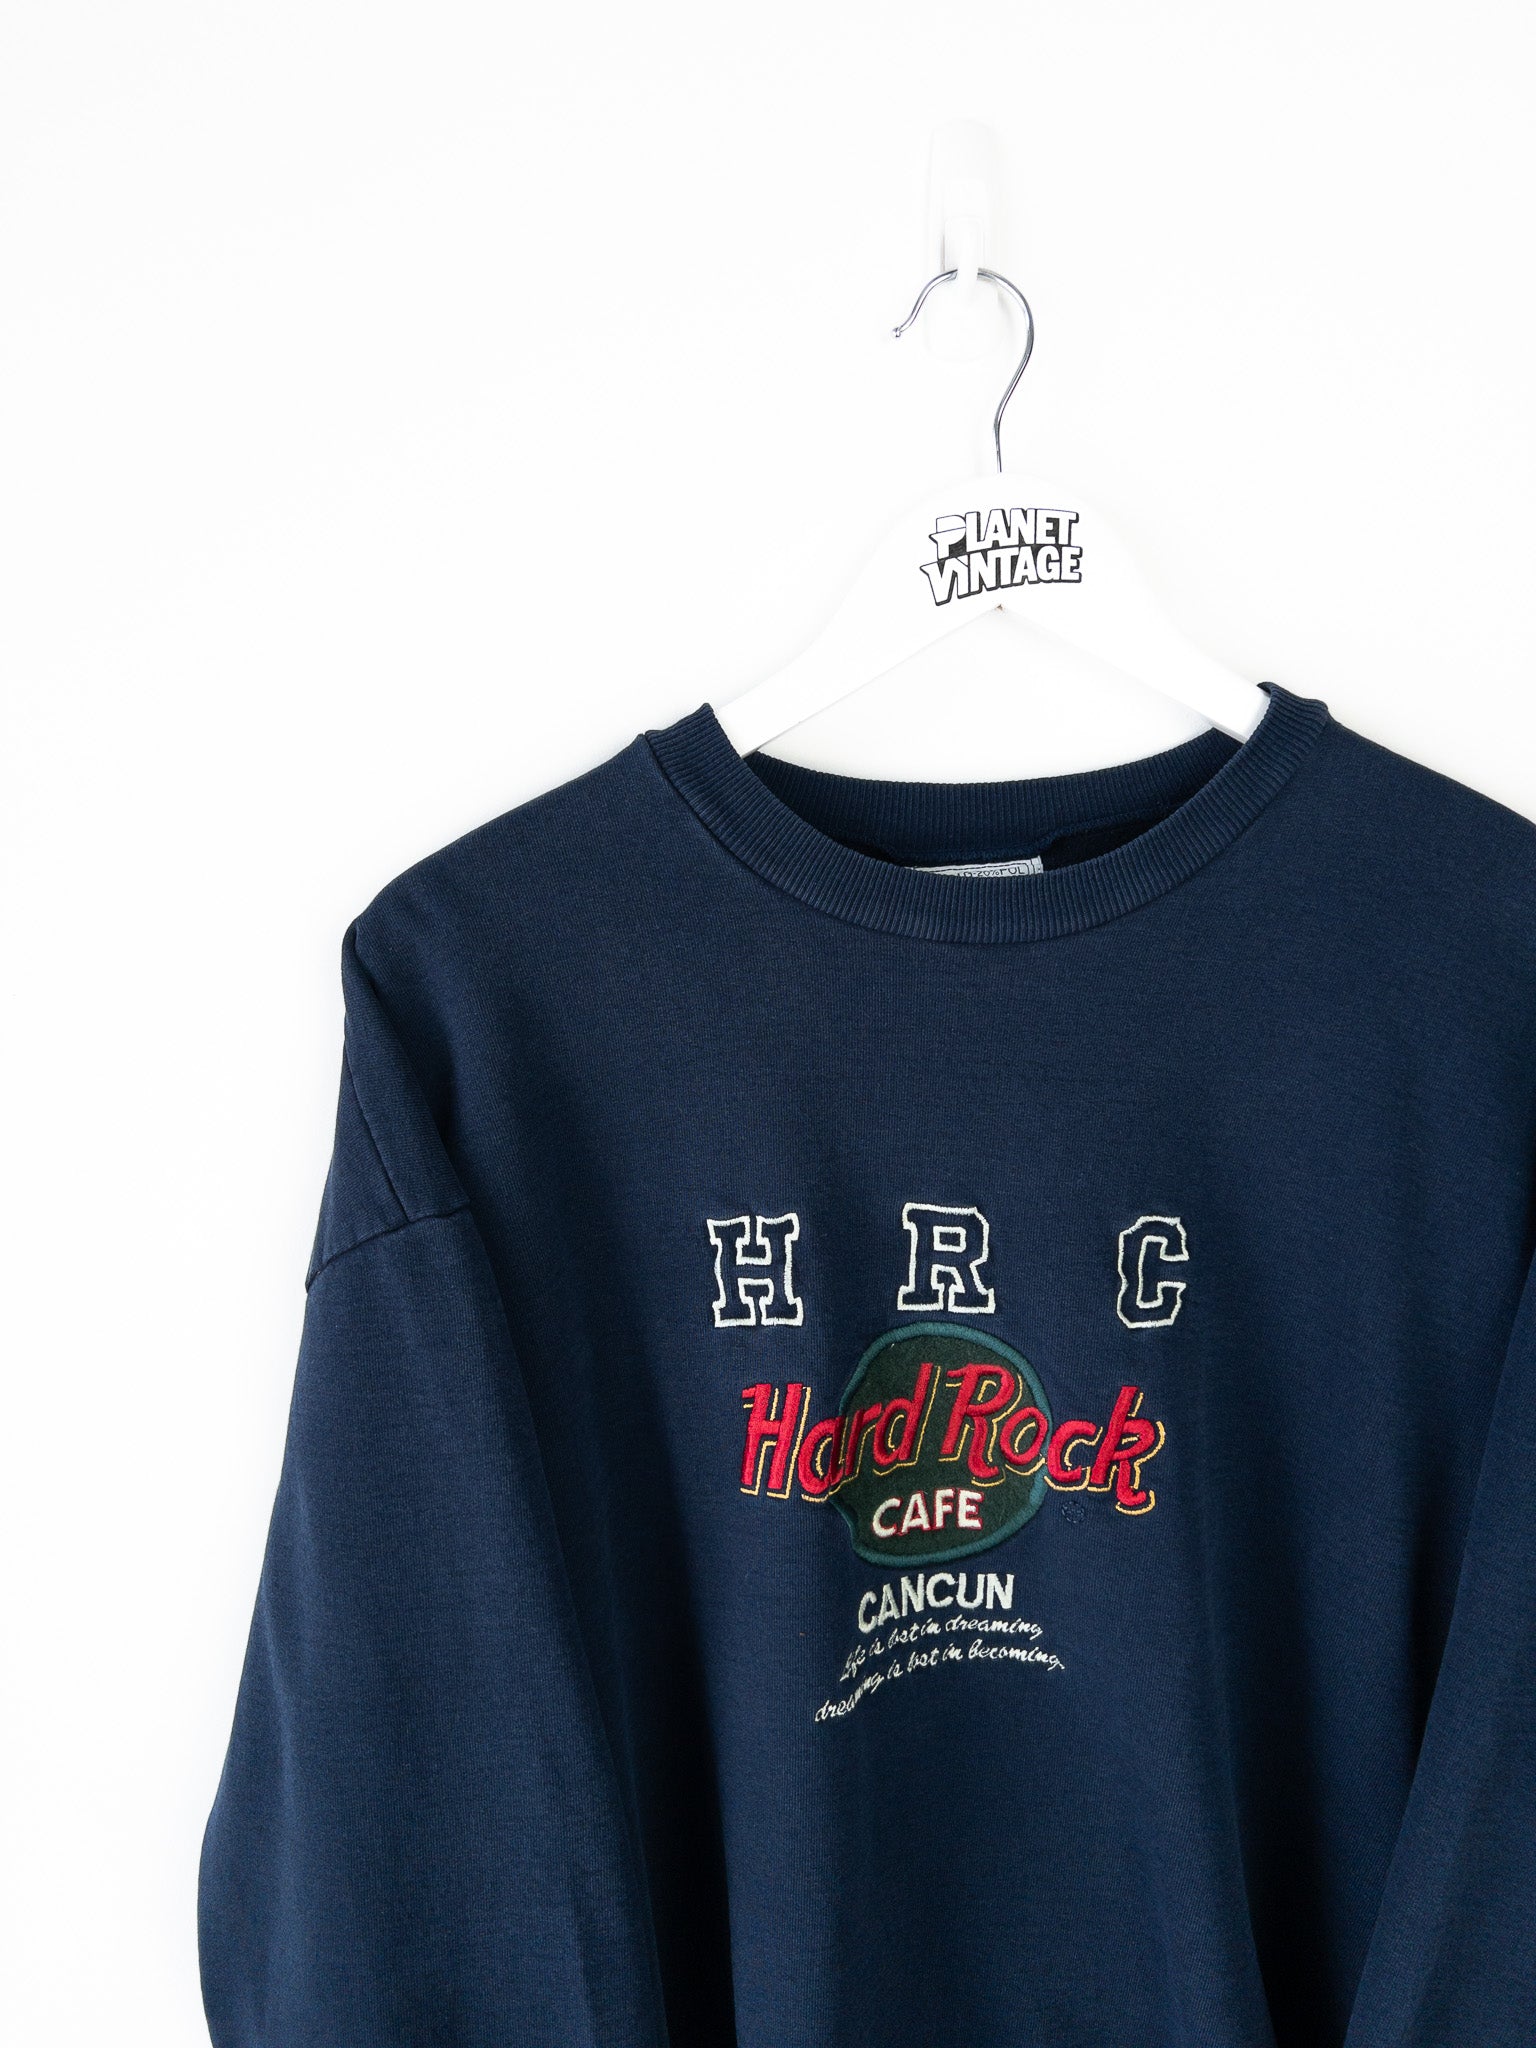 Vintage Hard Rock Cafe Cancun Sweatshirt (M)